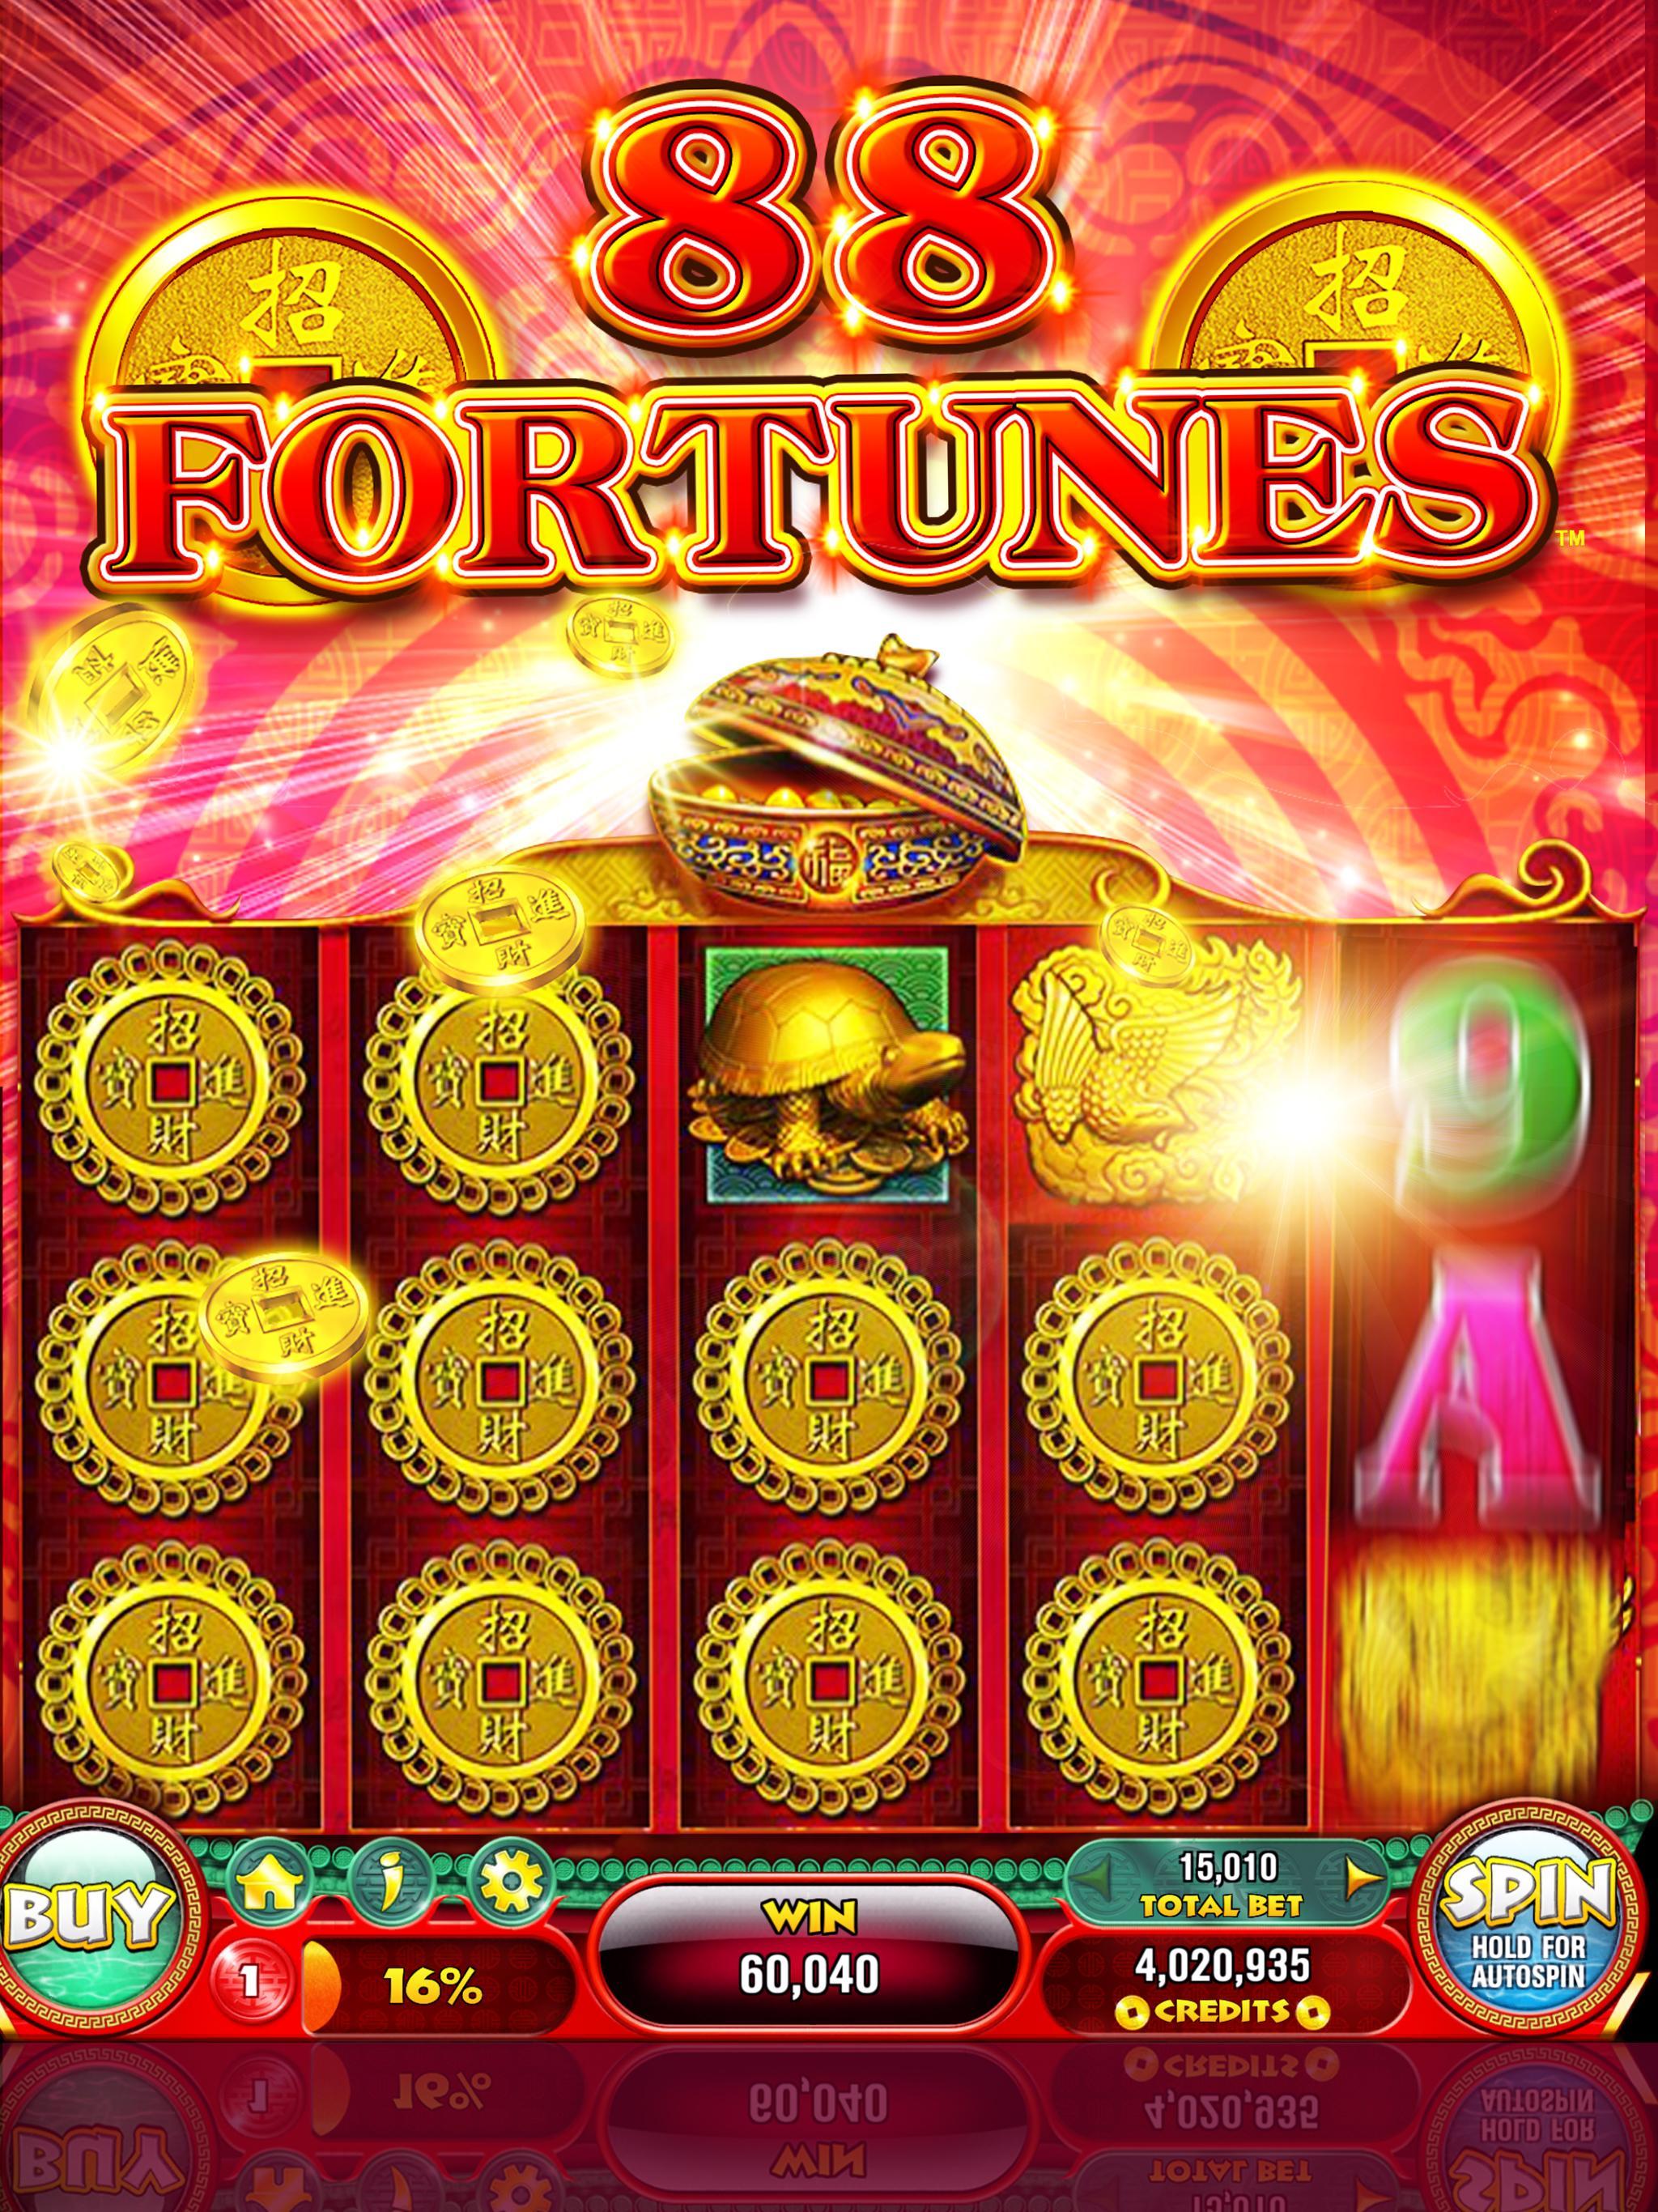 88 Fortunes Casino Games & Free Slot Machines 3.2.38 Screenshot 13